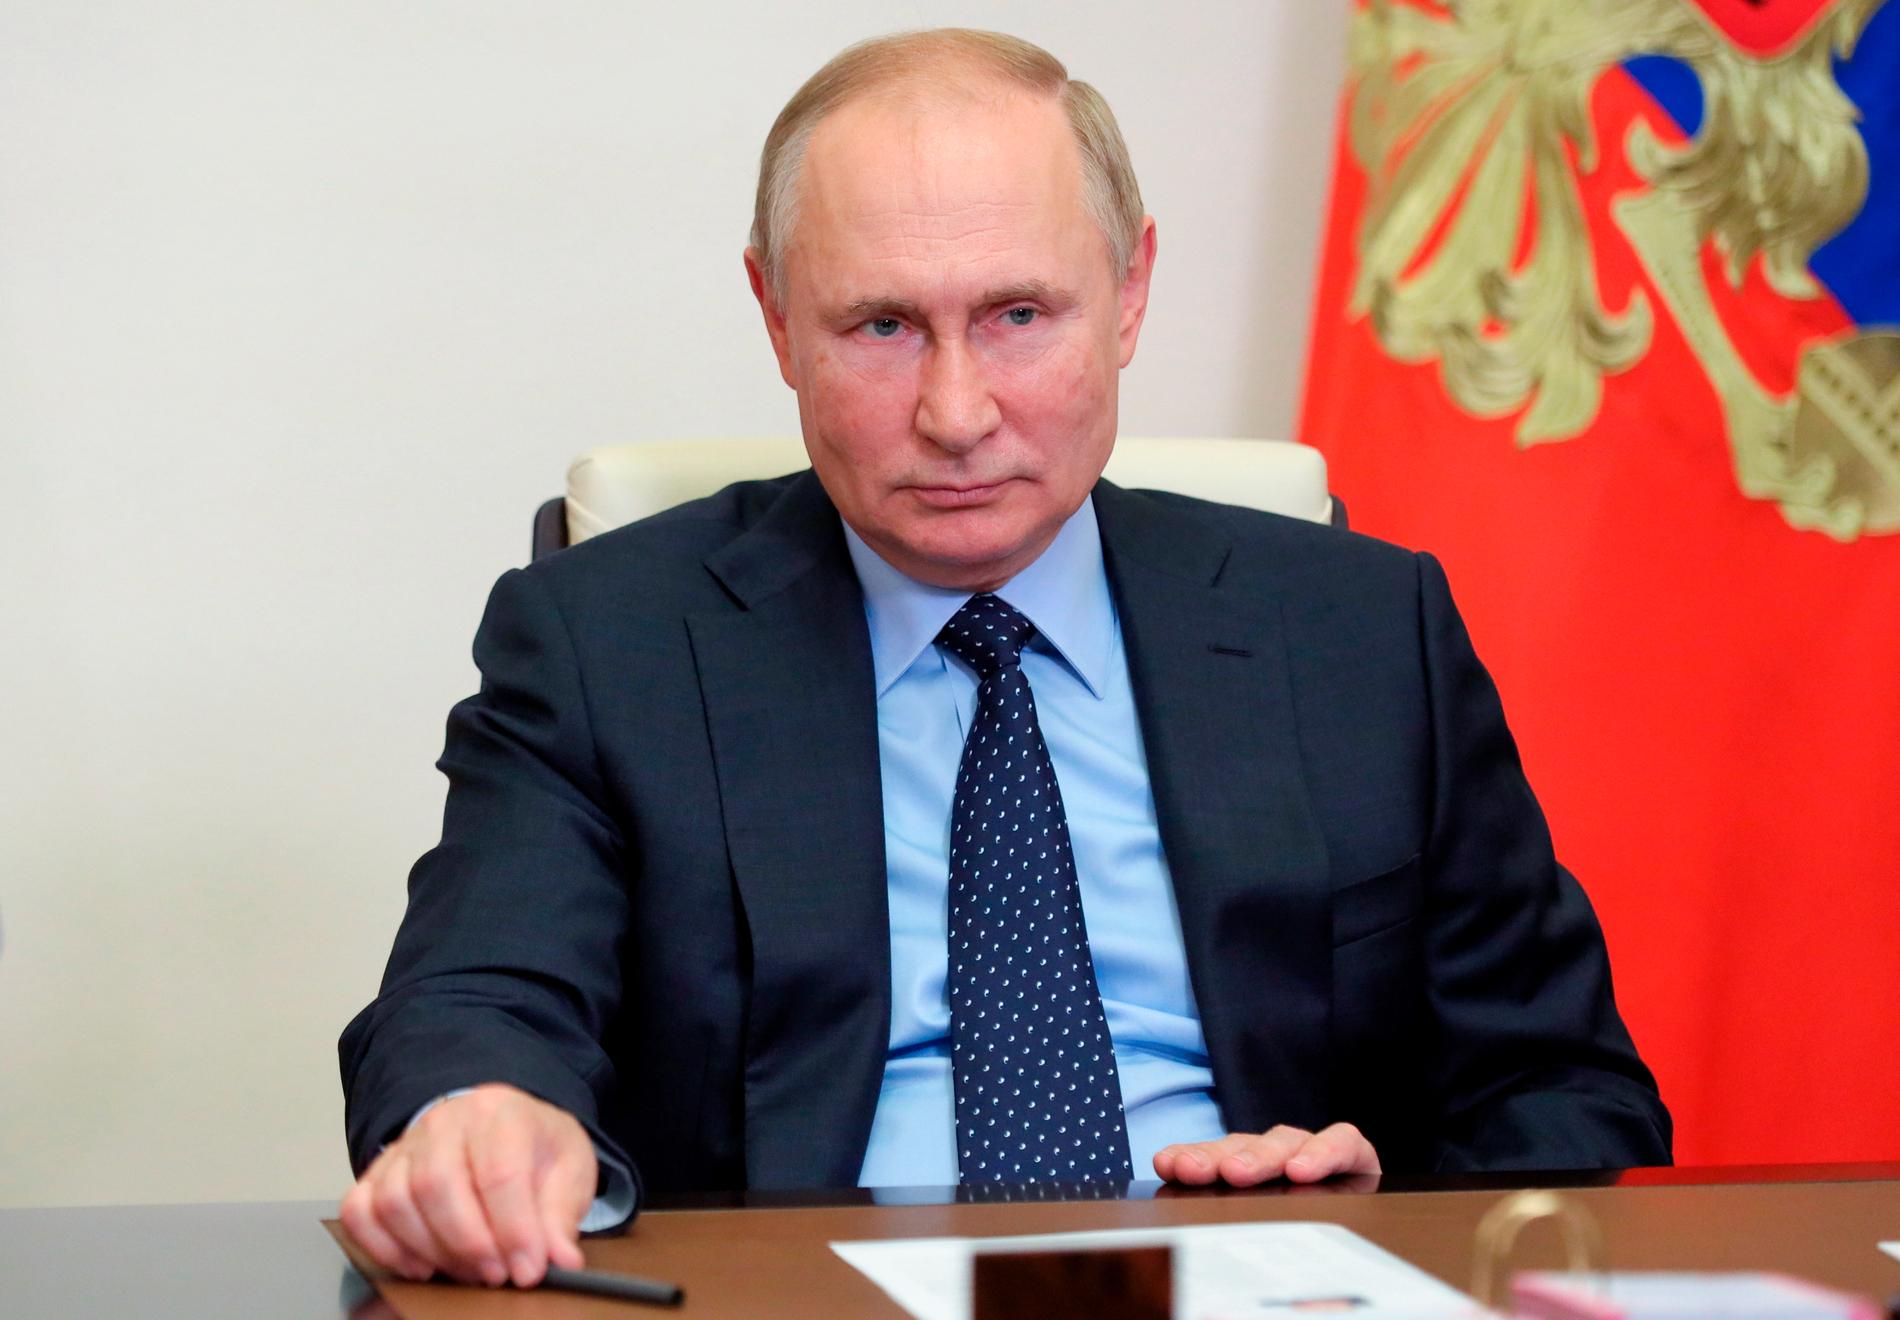 Rysslands president Vladimir Putin har meddelat att han inte kommer komma på klimattoppmötet i Glasgow i november.